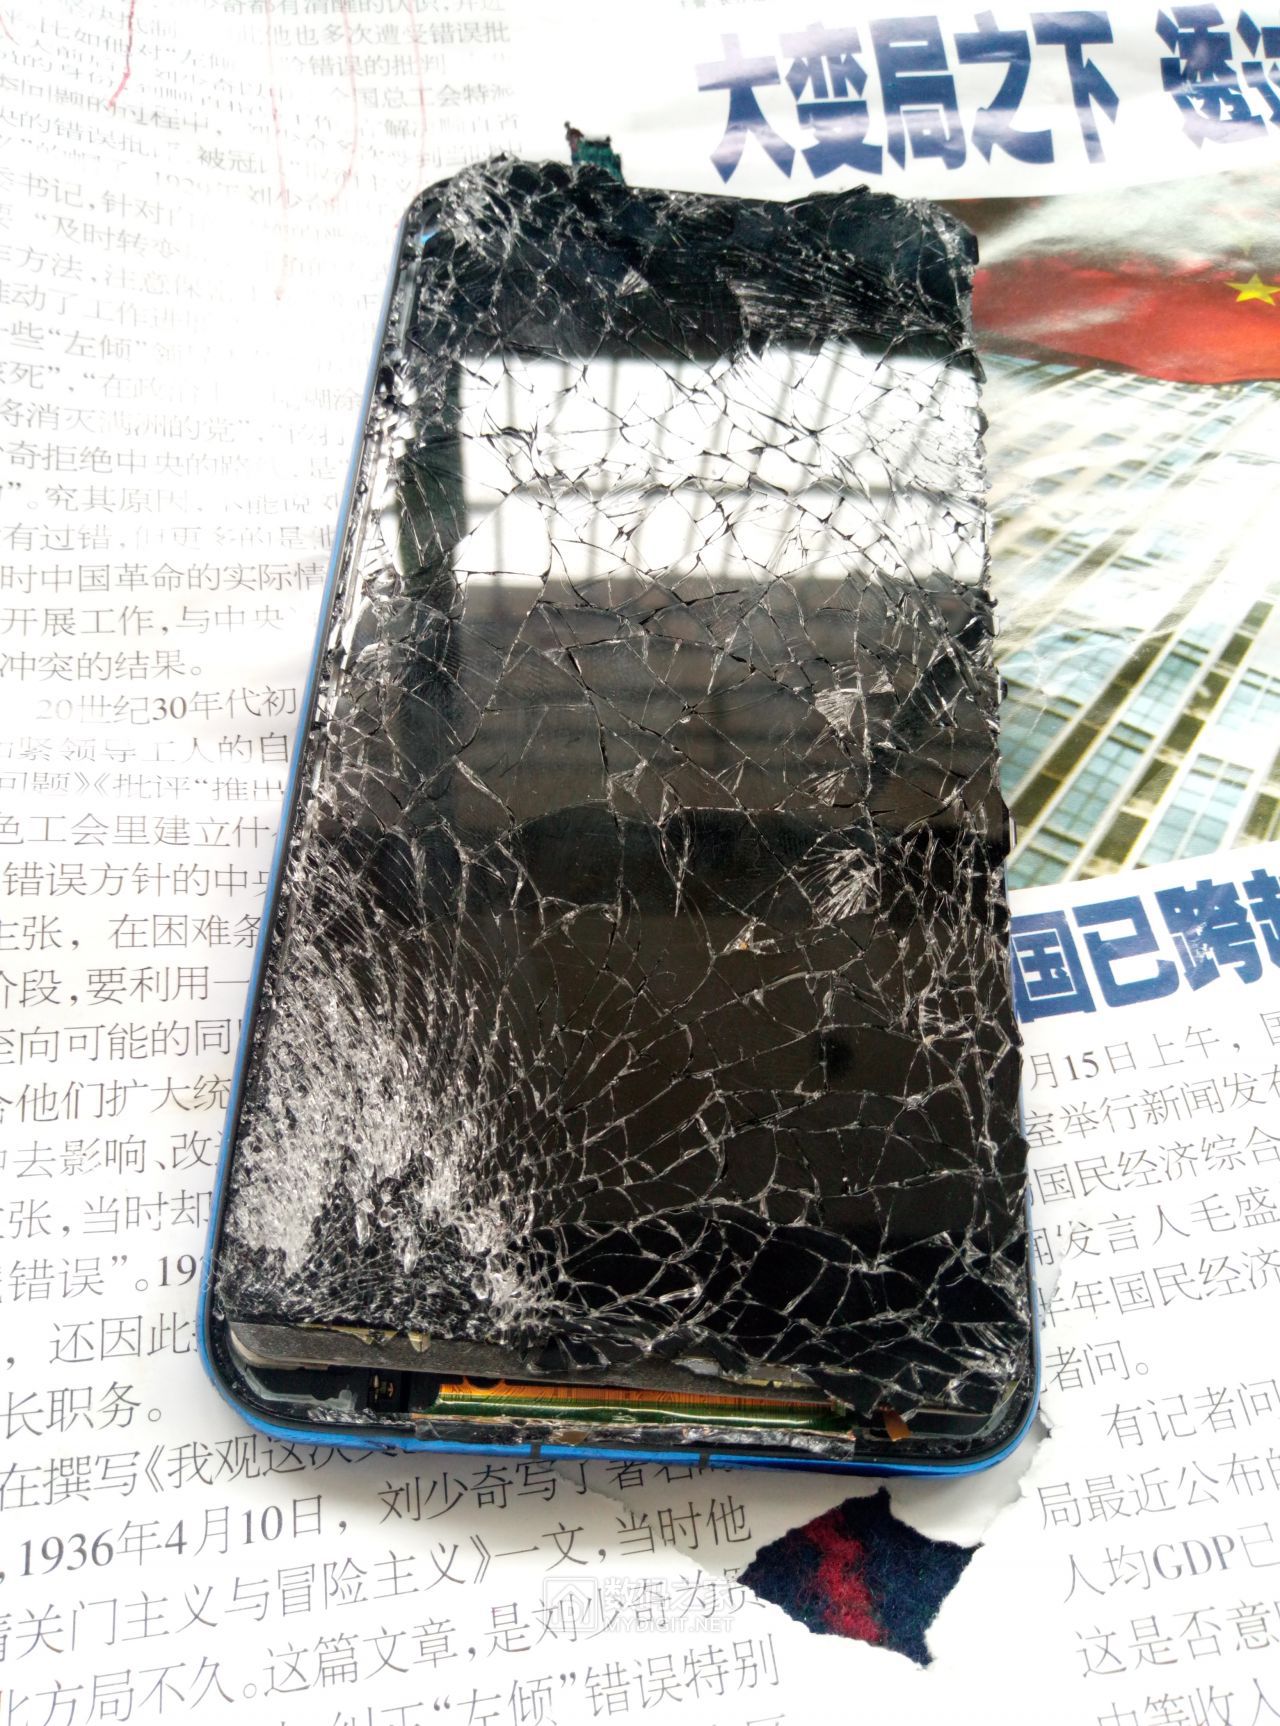 手机碎了图片苹果,苹果手机屏幕碎了,碎屏手机图片大全大图_大山谷图库